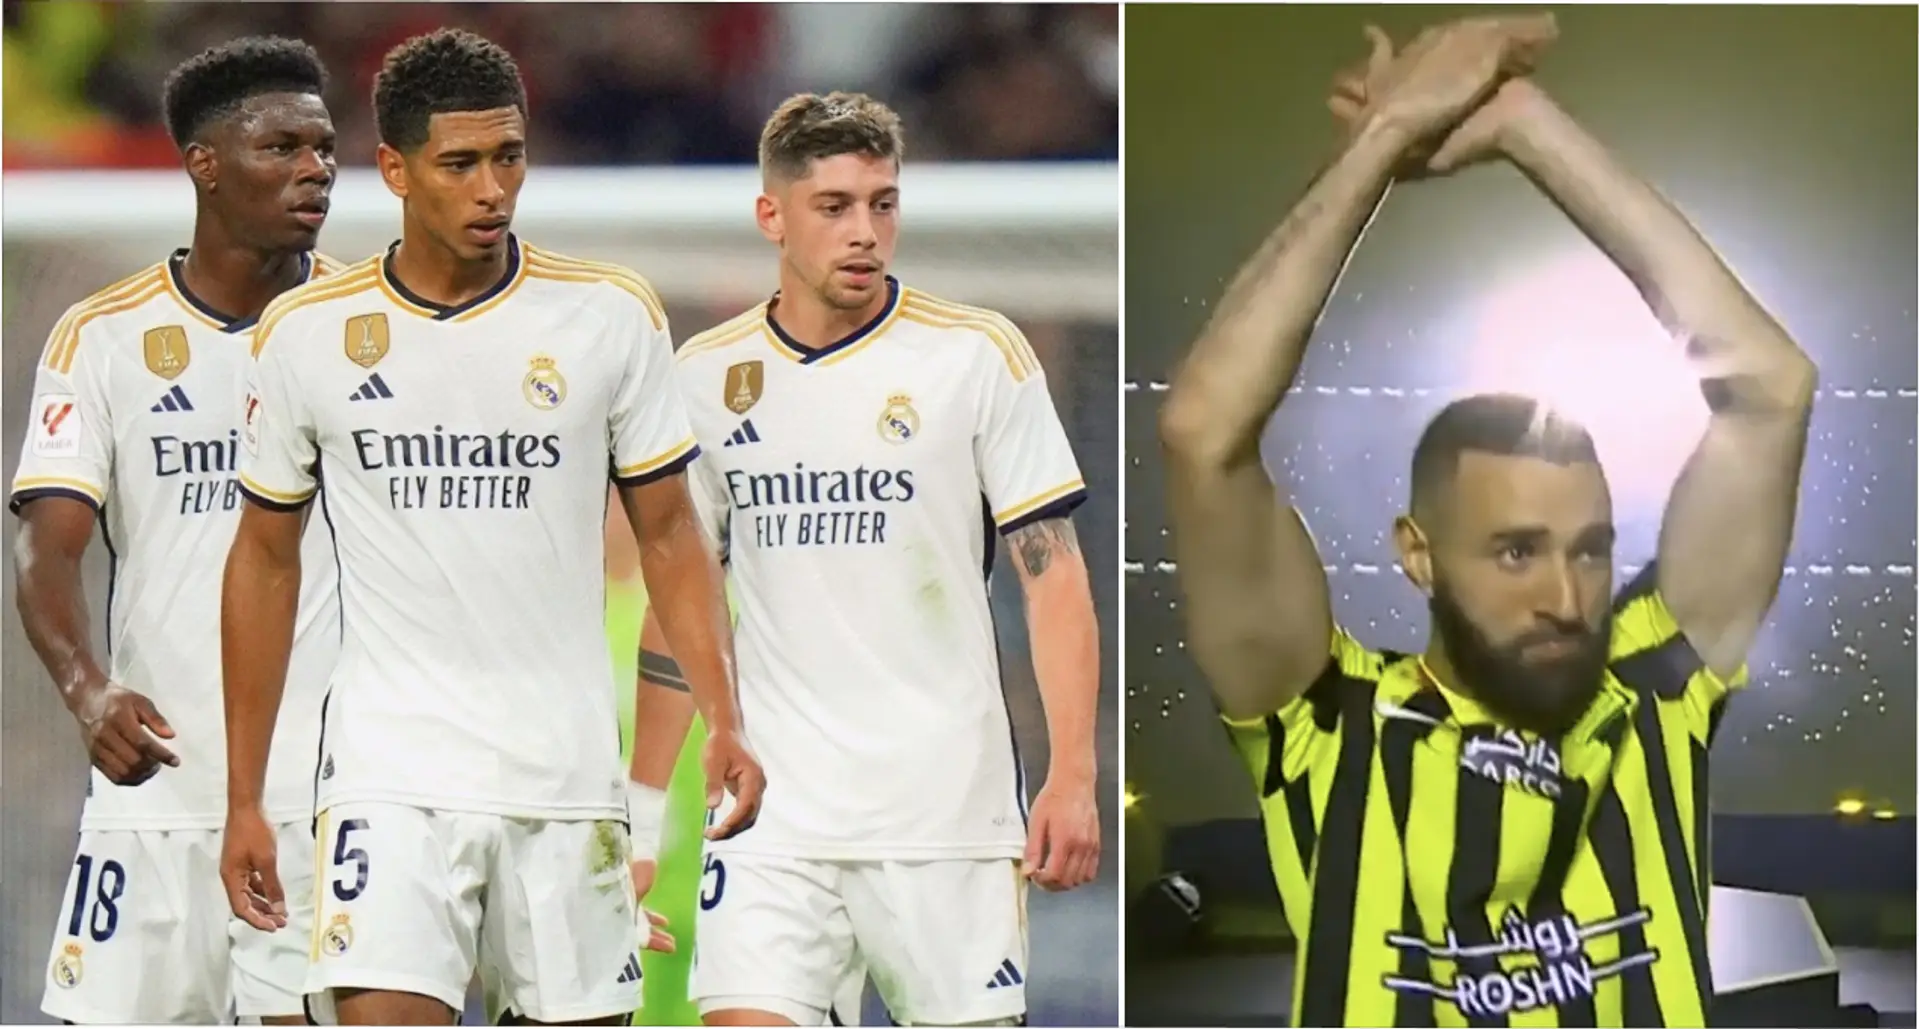 Benzema de retour au Real Madrid et 3 autres grosses actus que vous avez peut-être manquées